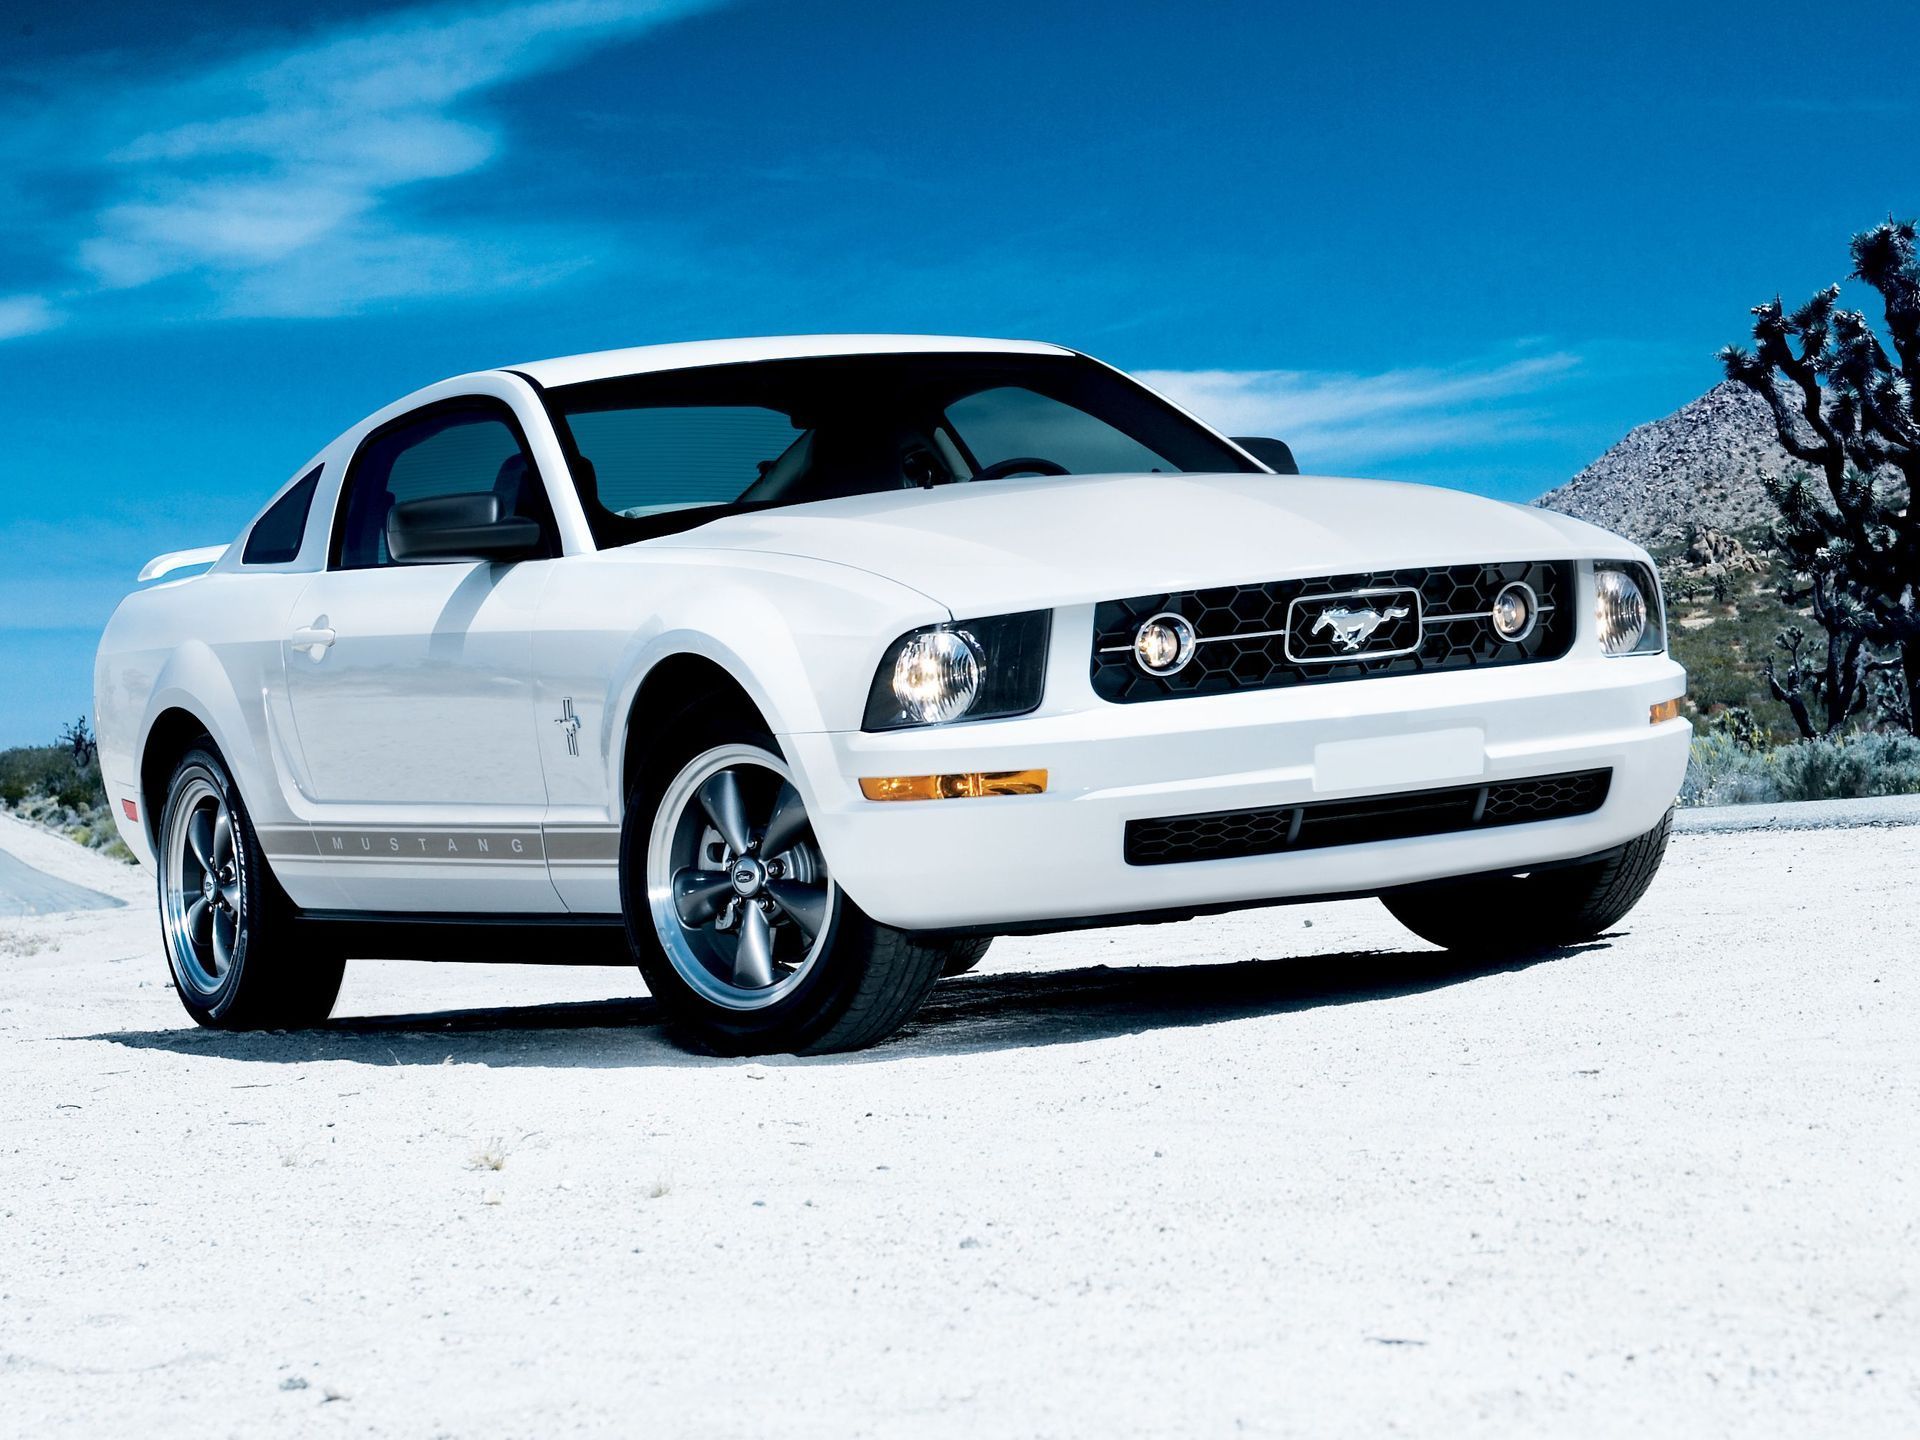 White 2006 Mustang V6 on desert road